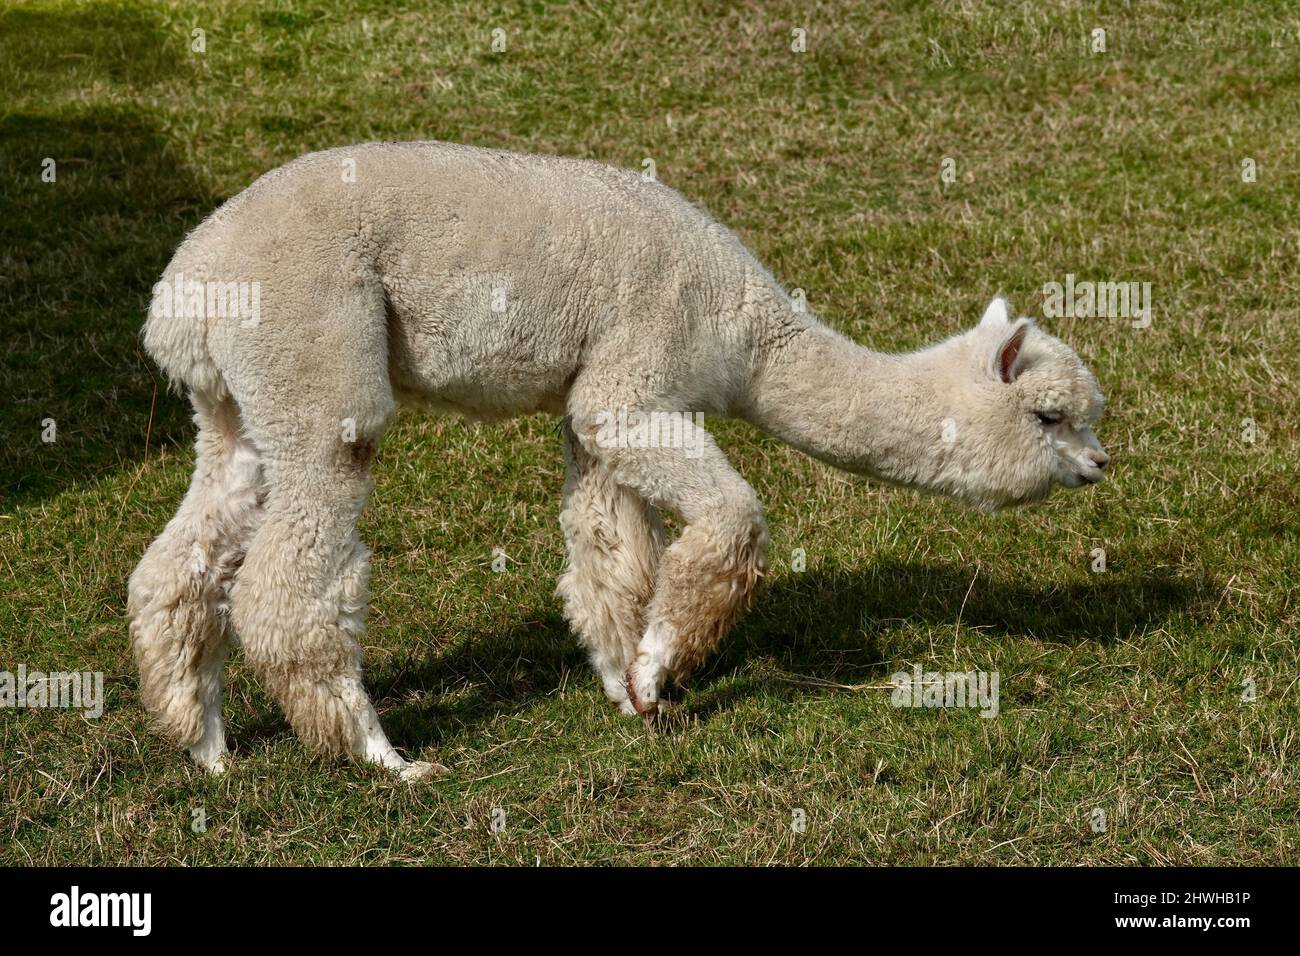 Niedliche Erwachsene Lama alpaca steht auf grünem Gras und ist dabei, Gras zu essen. Stockfoto